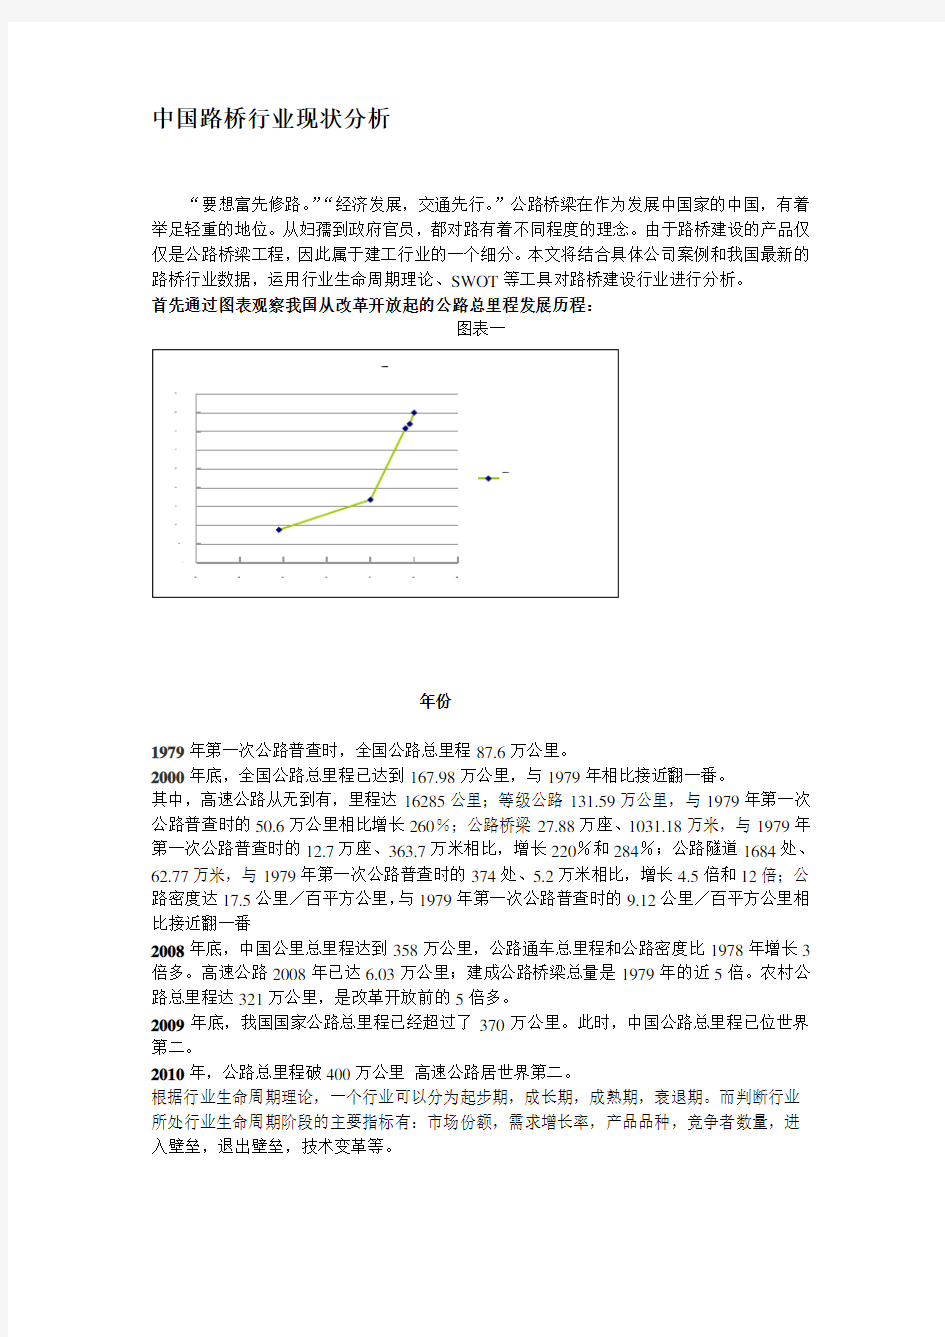 中国路桥行业现状分析